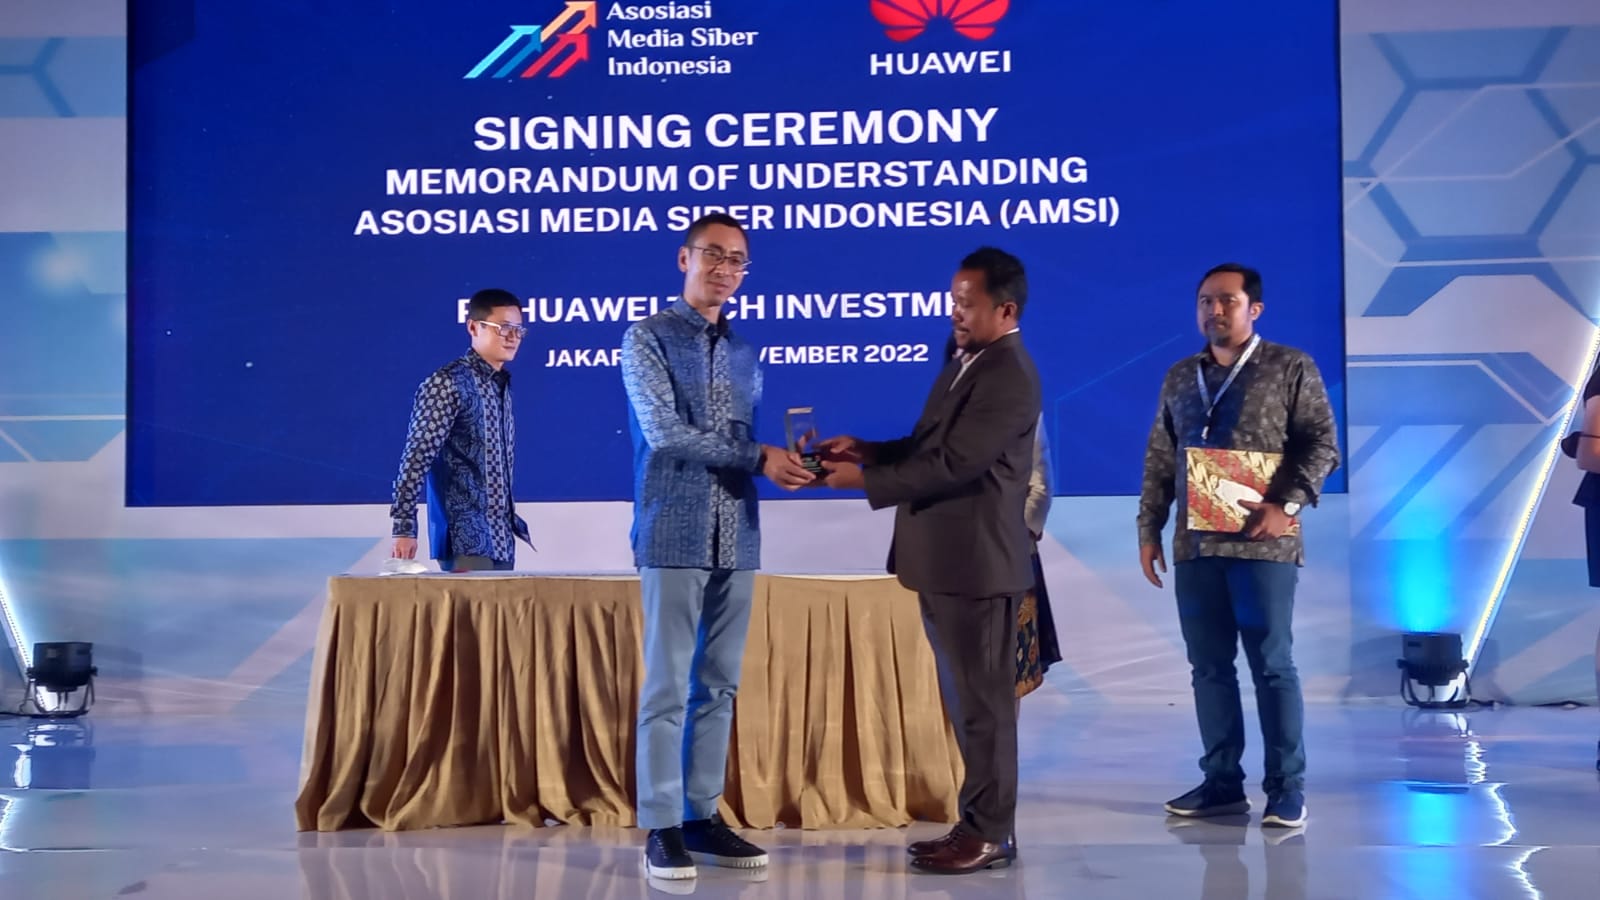 Huawei, penyedia solusi TIK terkemuka di dunia, menjalin kemitraan strategis dengan Asosiasi Media Siber Indonesia (AMSI)